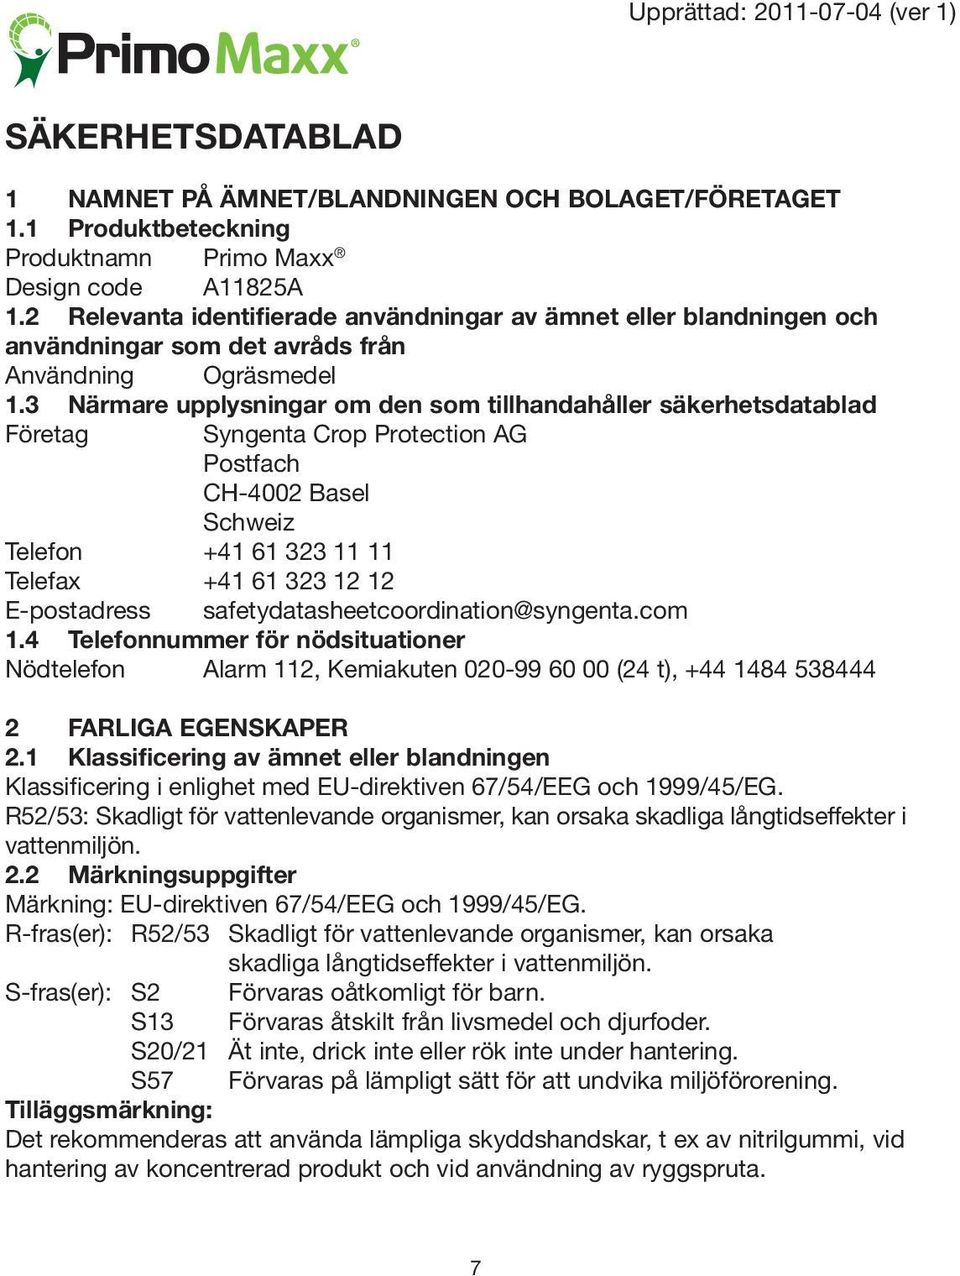 3 Närmare upplysningar om den som tillhandahåller säkerhetsdatablad Företag Syngenta Crop Protection AG Postfach CH-4002 Basel Schweiz Telefon +41 61 323 11 11 Telefax +41 61 323 12 12 E-postadress